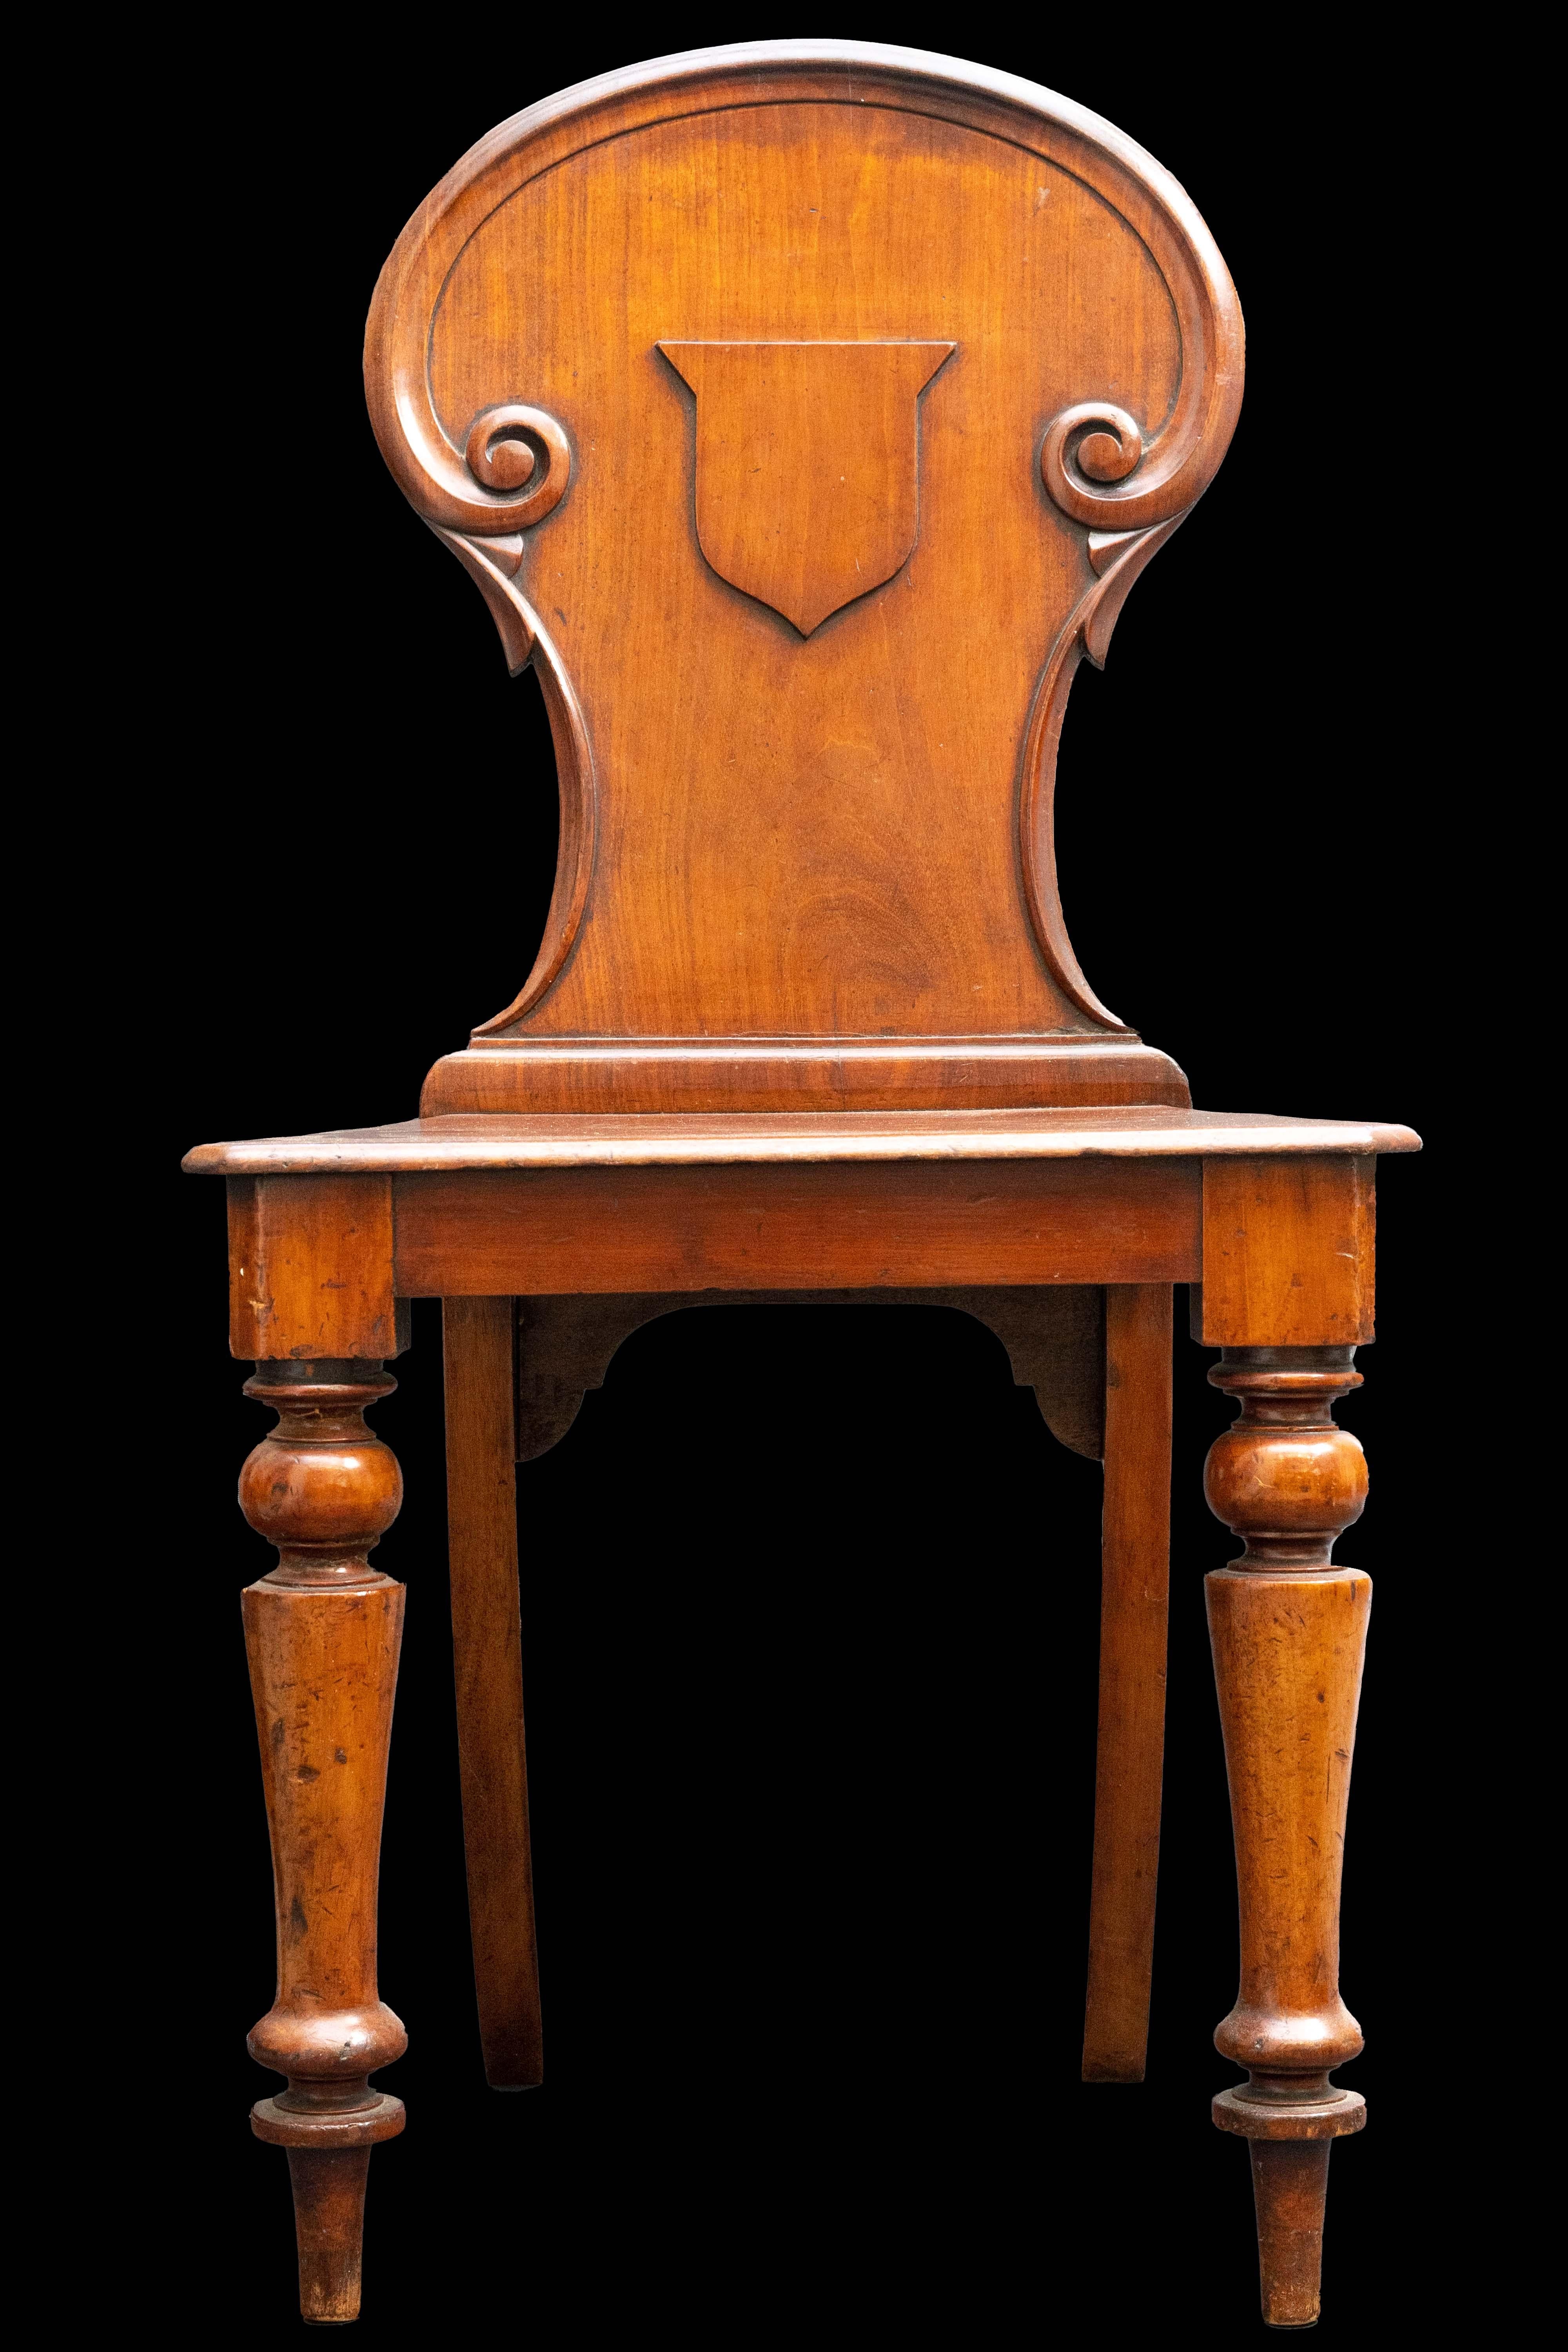 Antique walnut chair w/ crest detail.